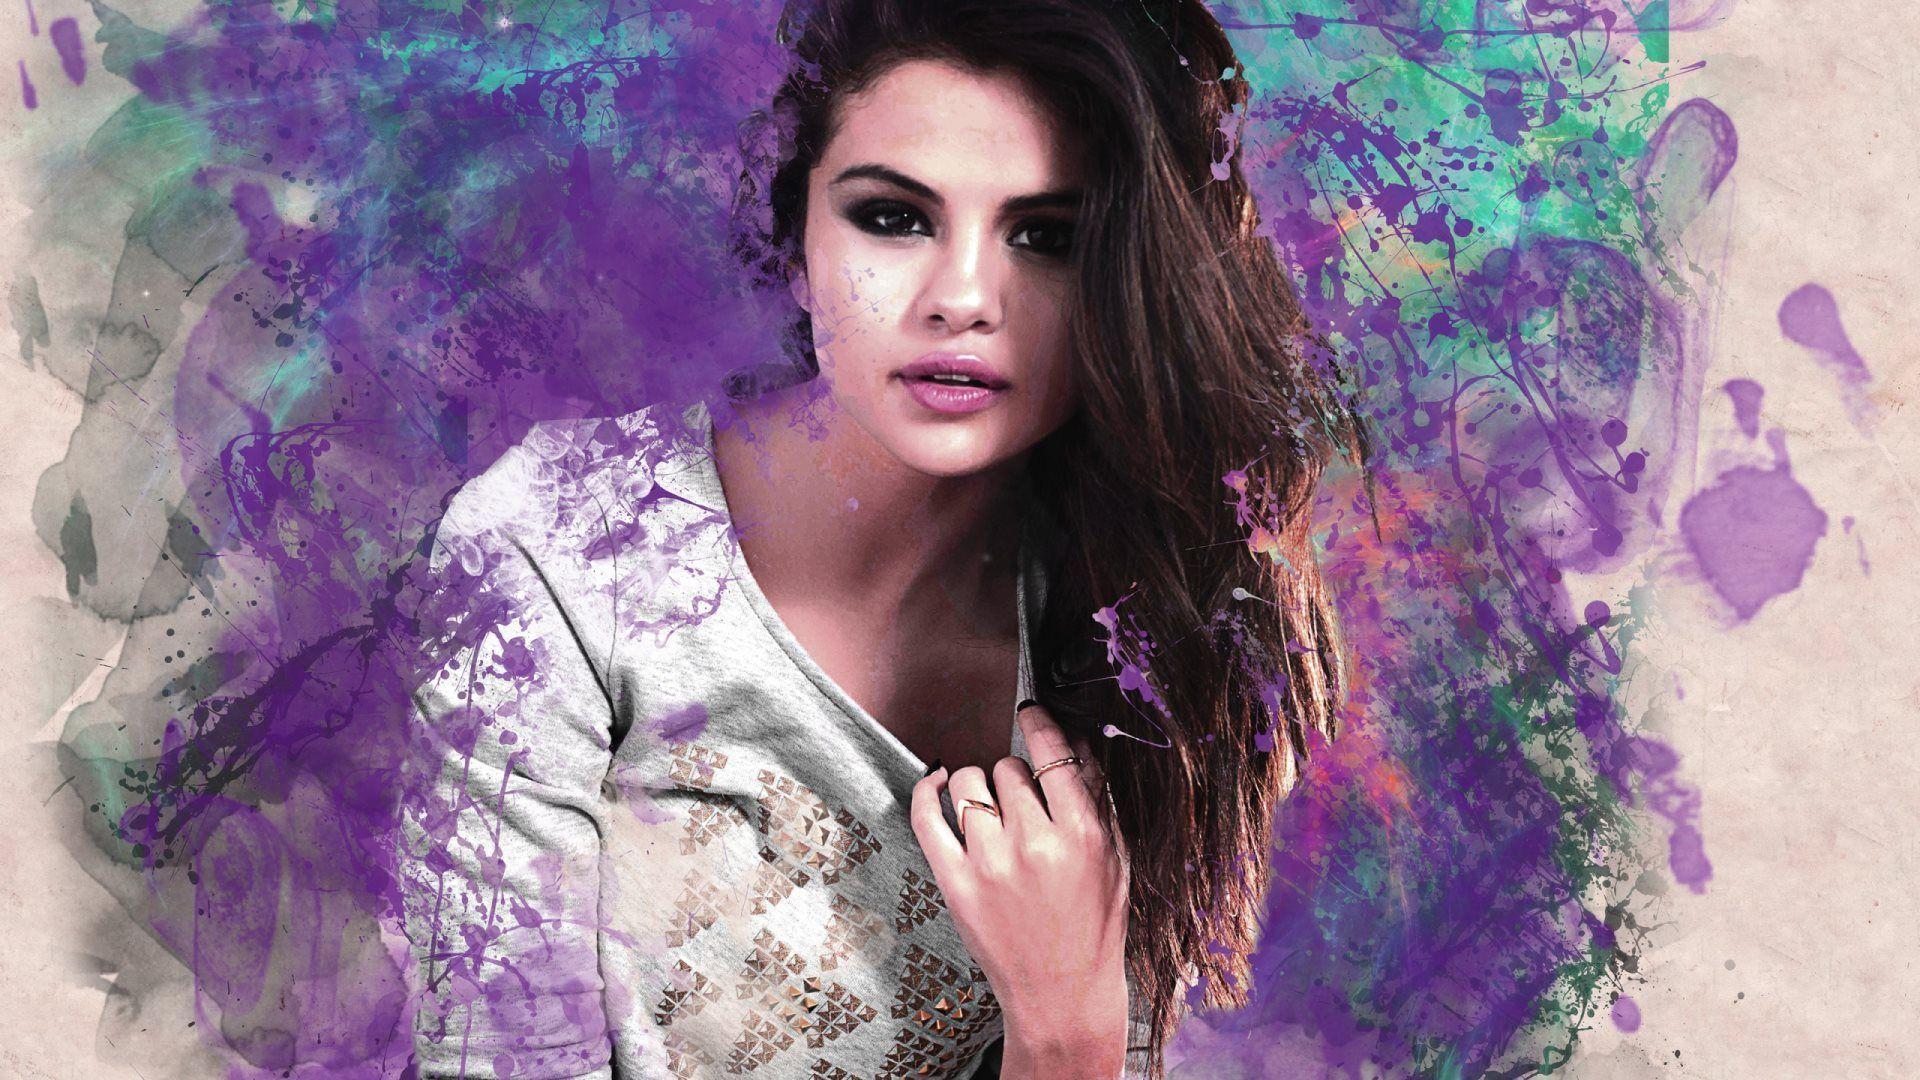 Fan Art of Selena Gomez HD Wallpapers. 4K